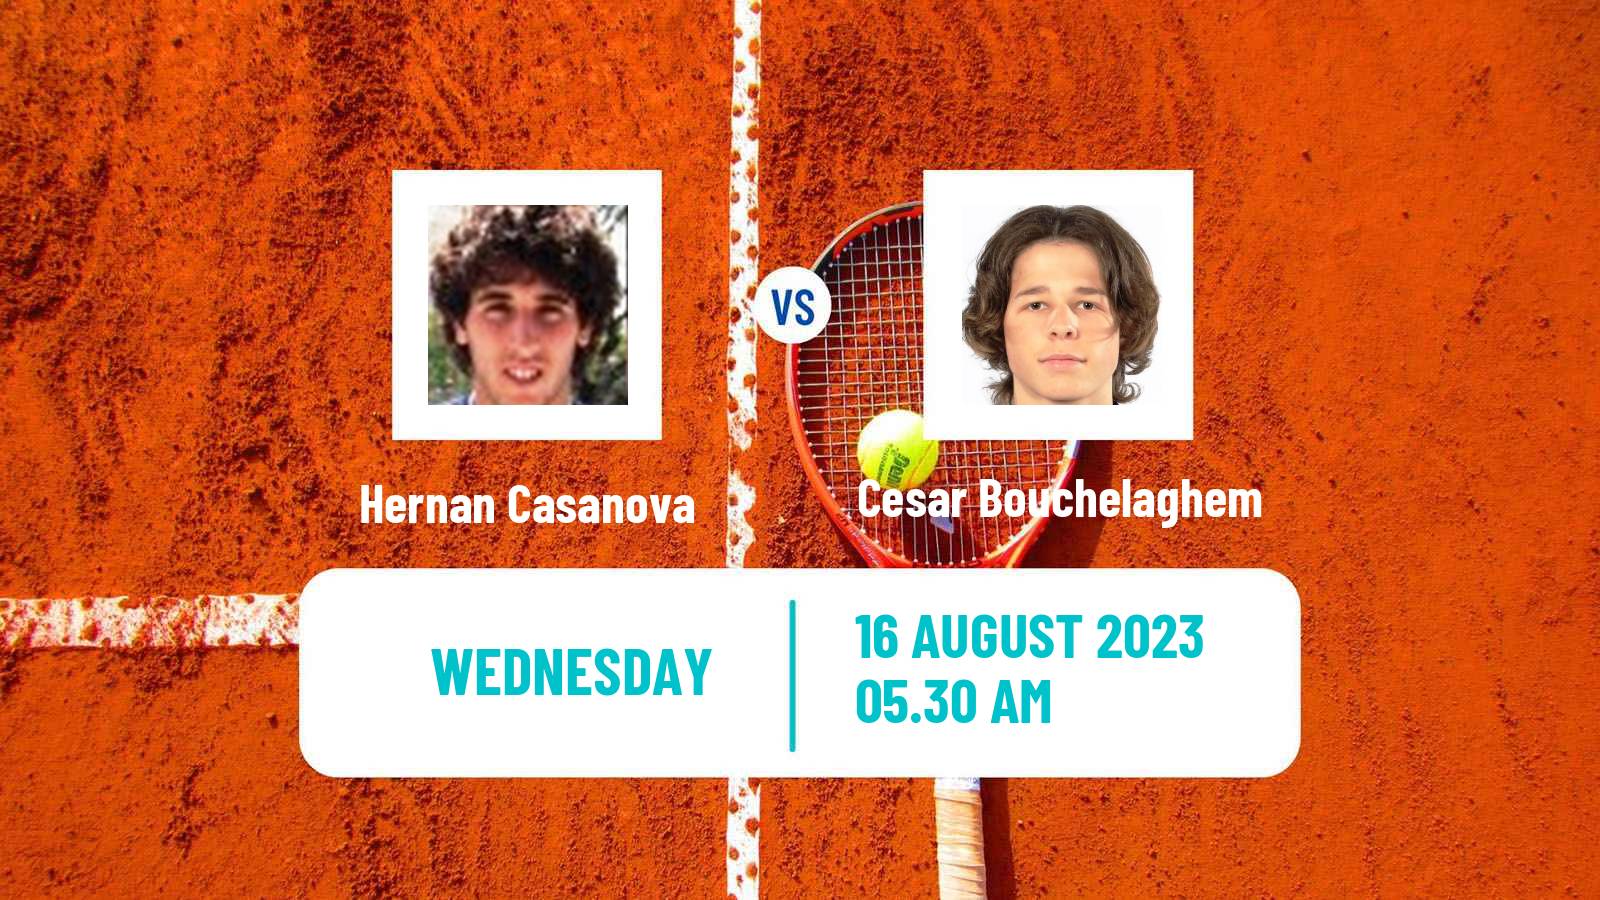 Tennis ITF M25 Koksijde Men Hernan Casanova - Cesar Bouchelaghem